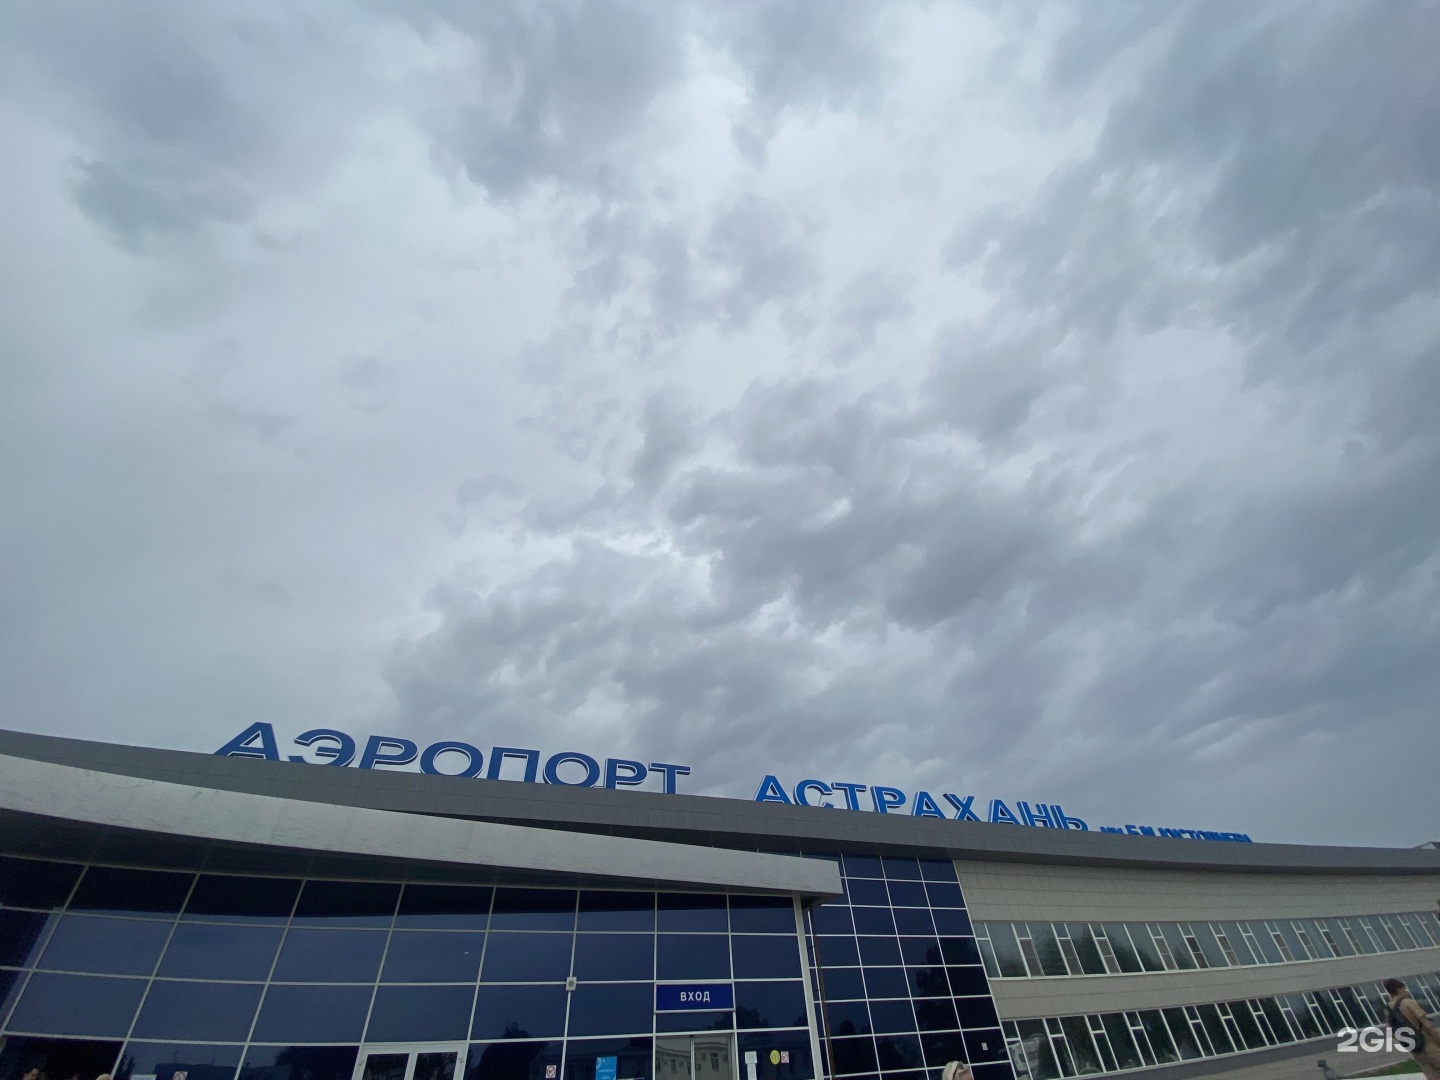 Аэропорт в астрахани работает, но некоторые рейсы отменены